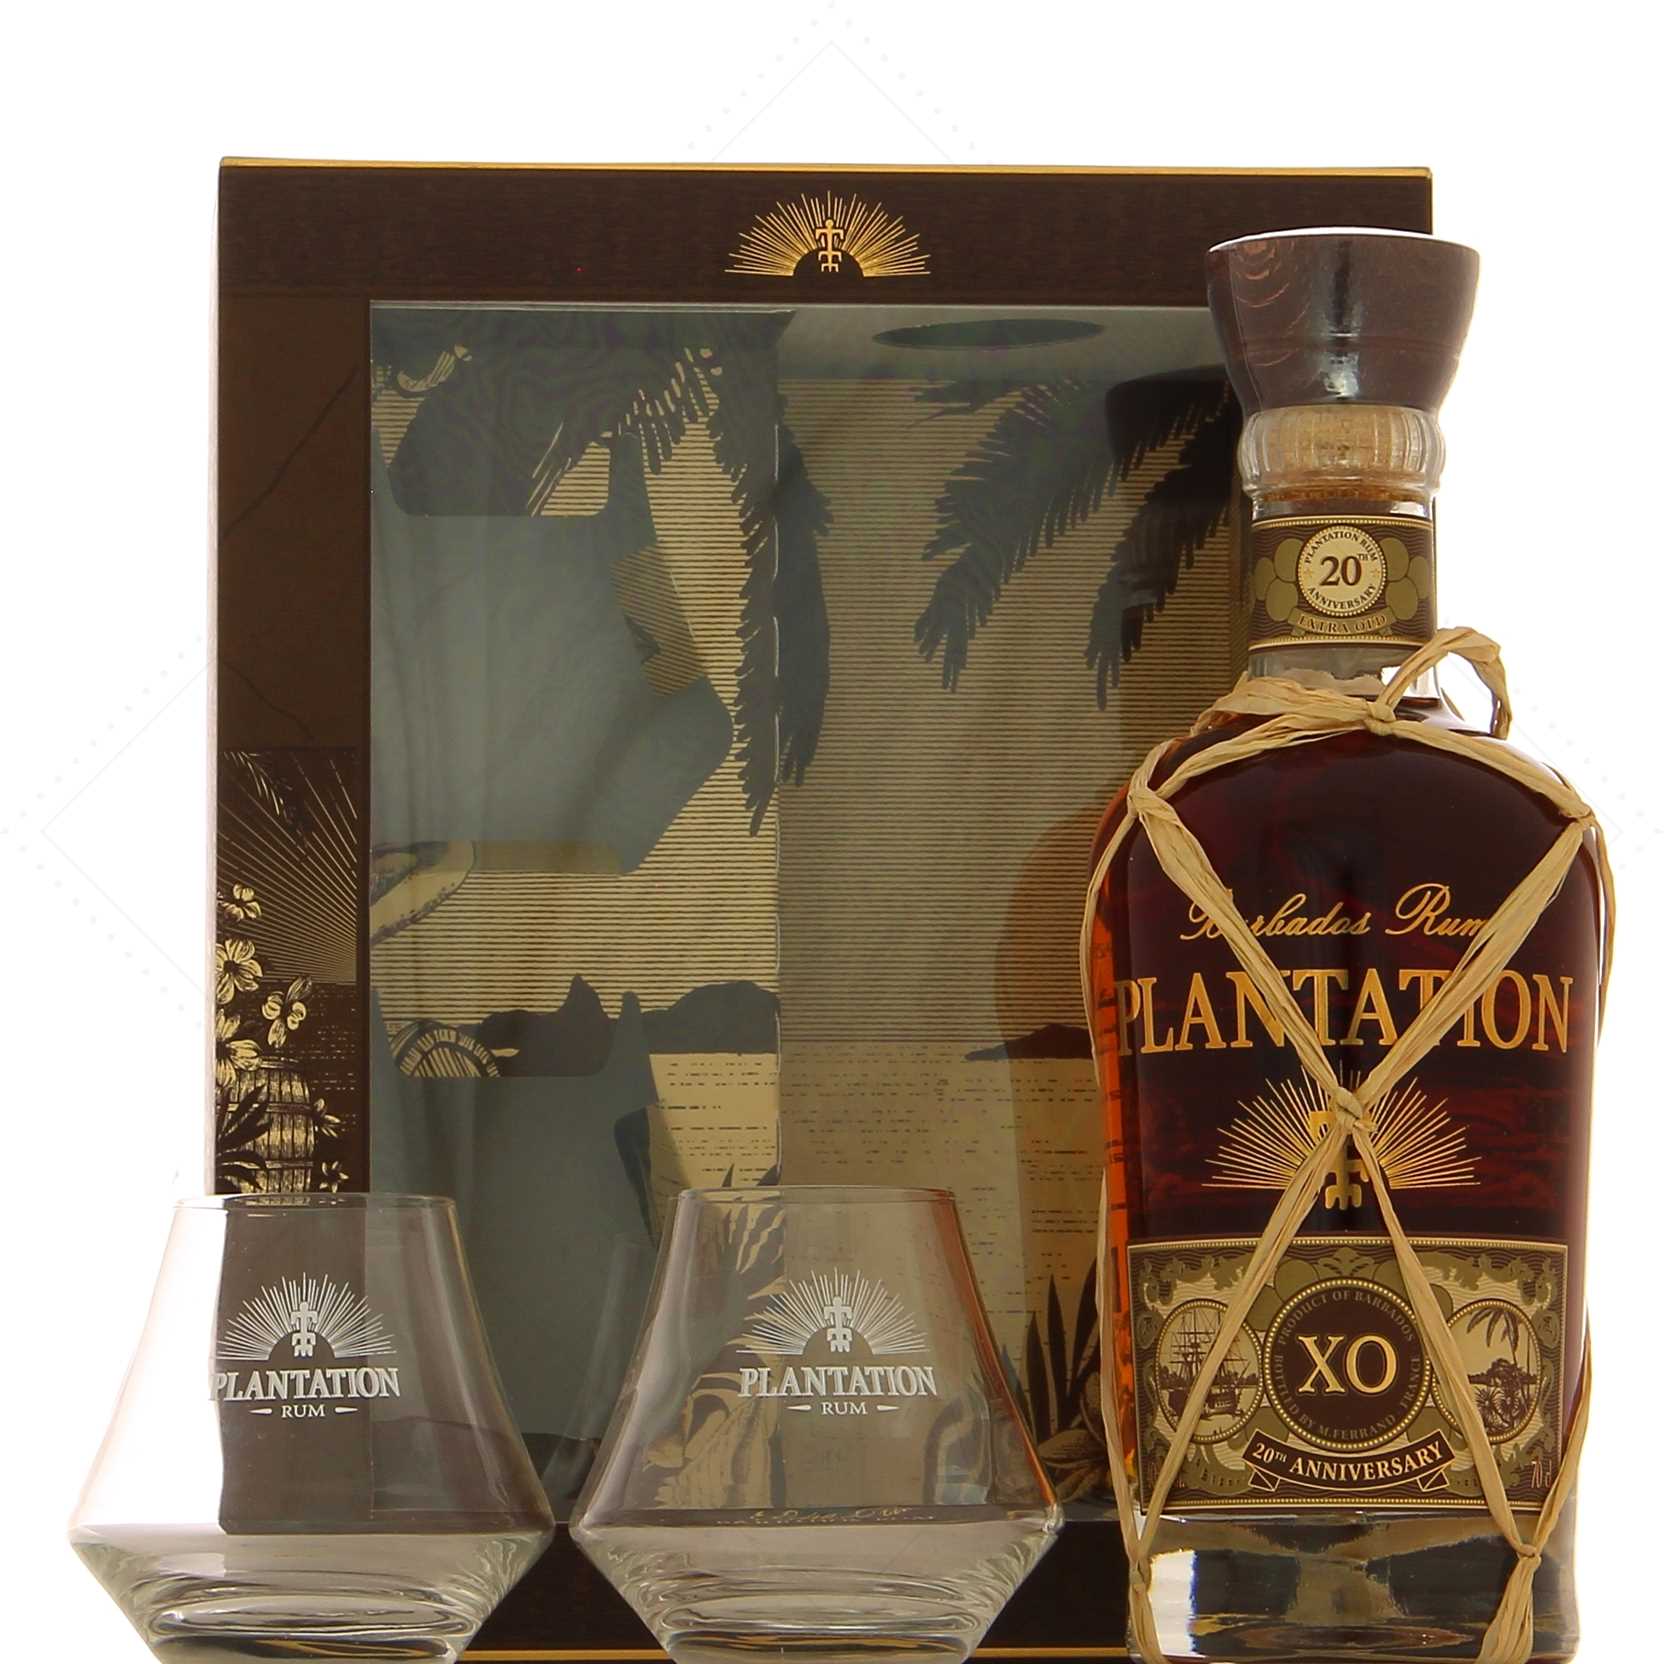 Plantation Rum Barbados XO 20th Anniversary Boxed set 2 warm glasses 40° -  Rhum Attitude